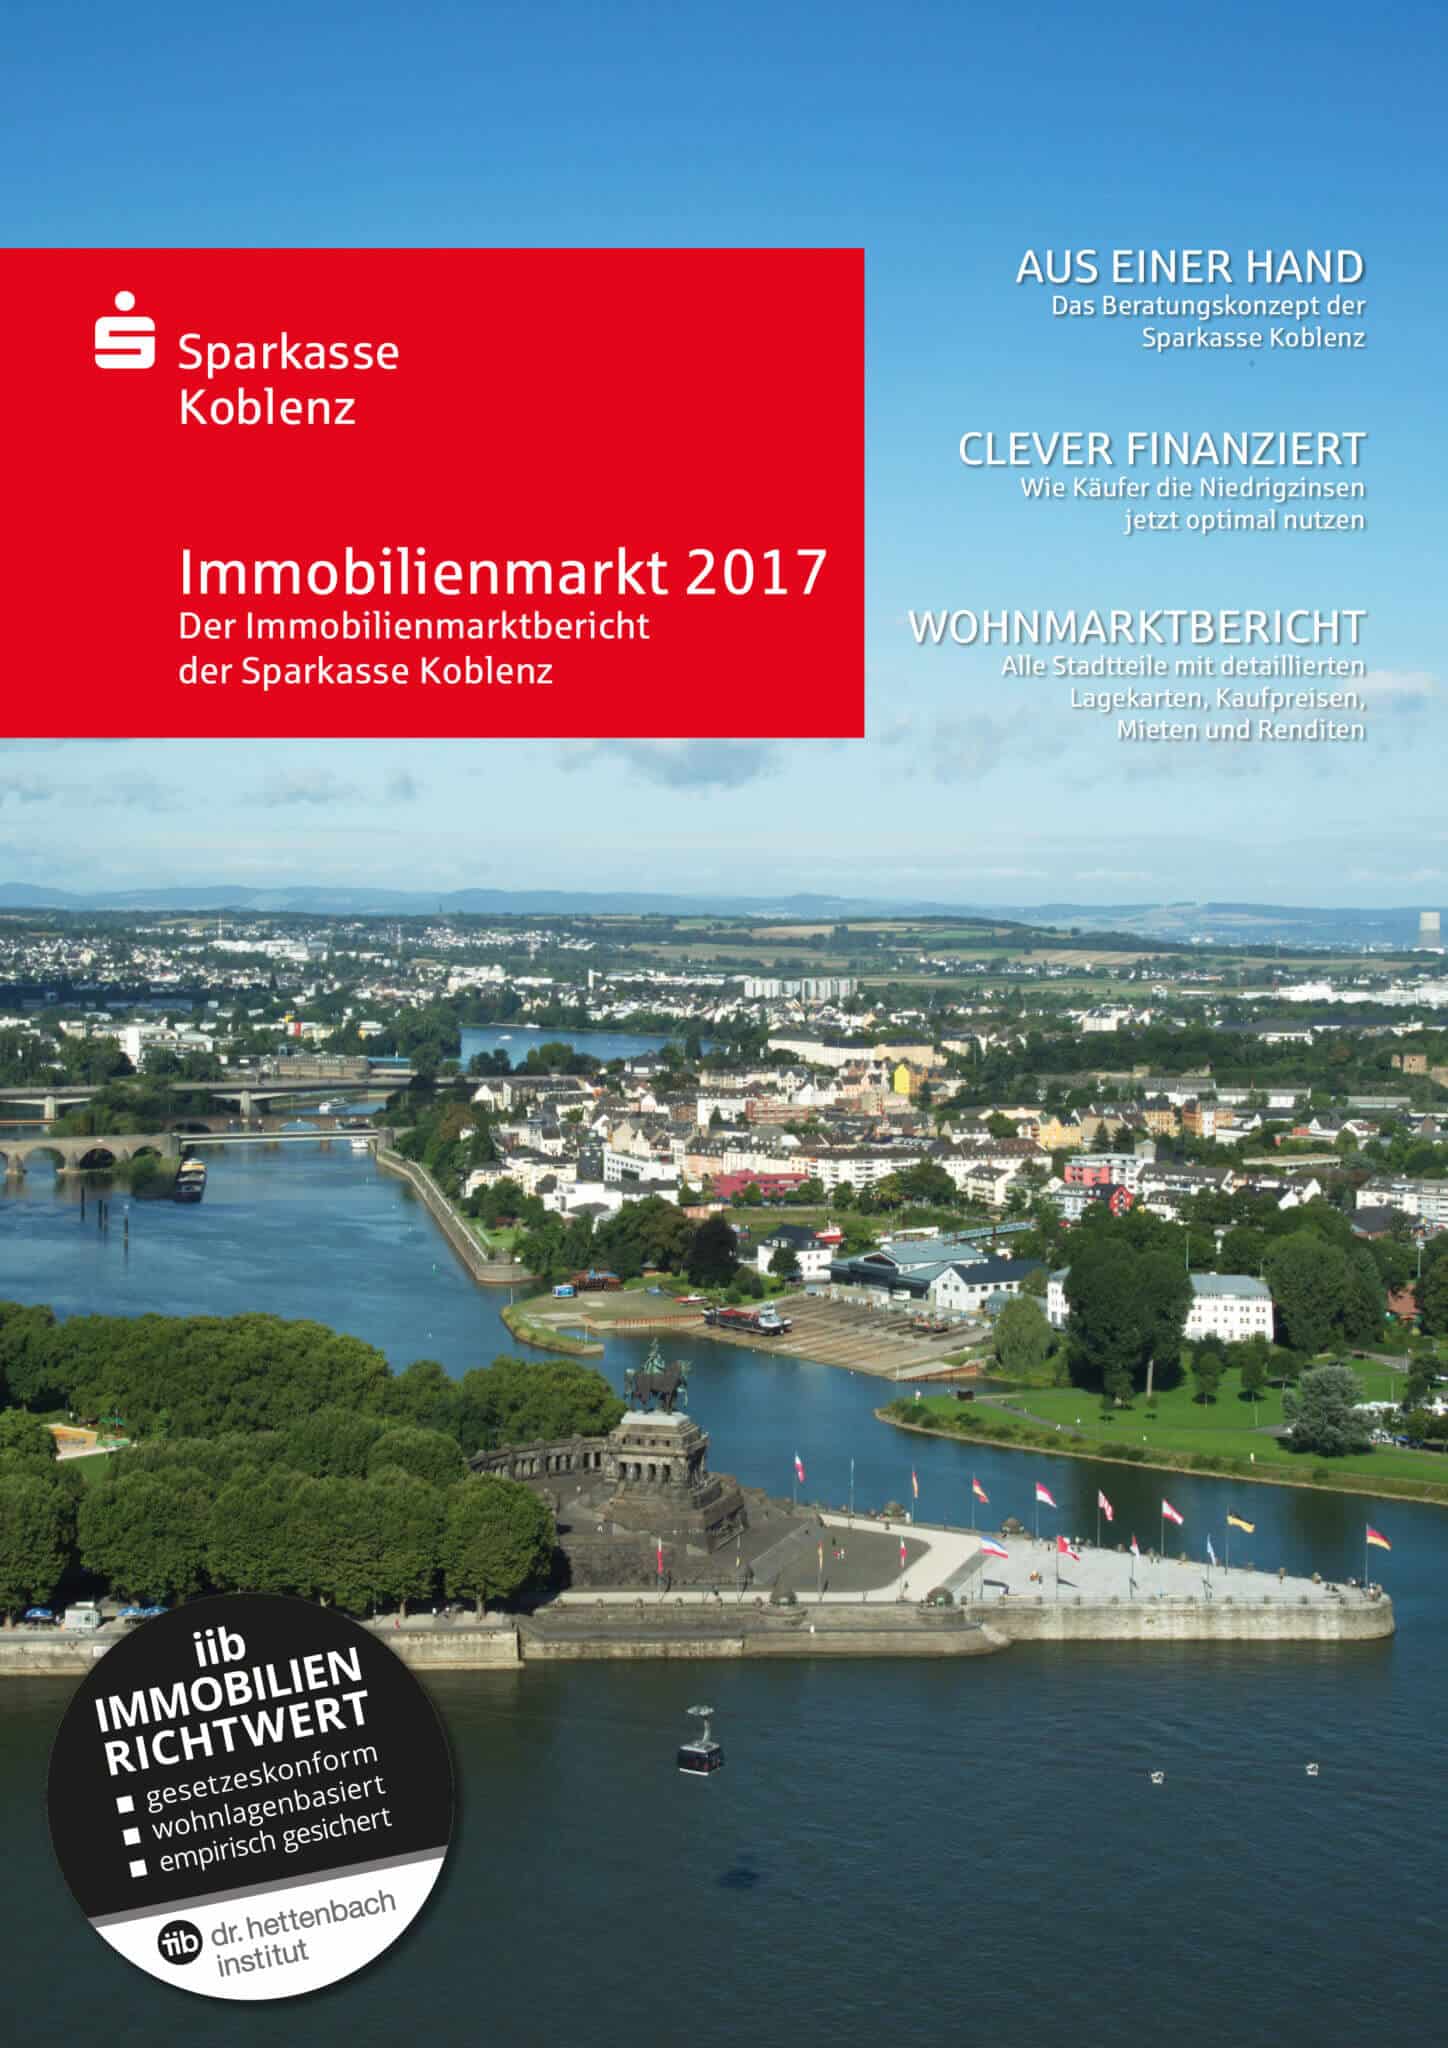 Titelbild: Wohnmarktbericht 2017 der Sparkasse Koblenz